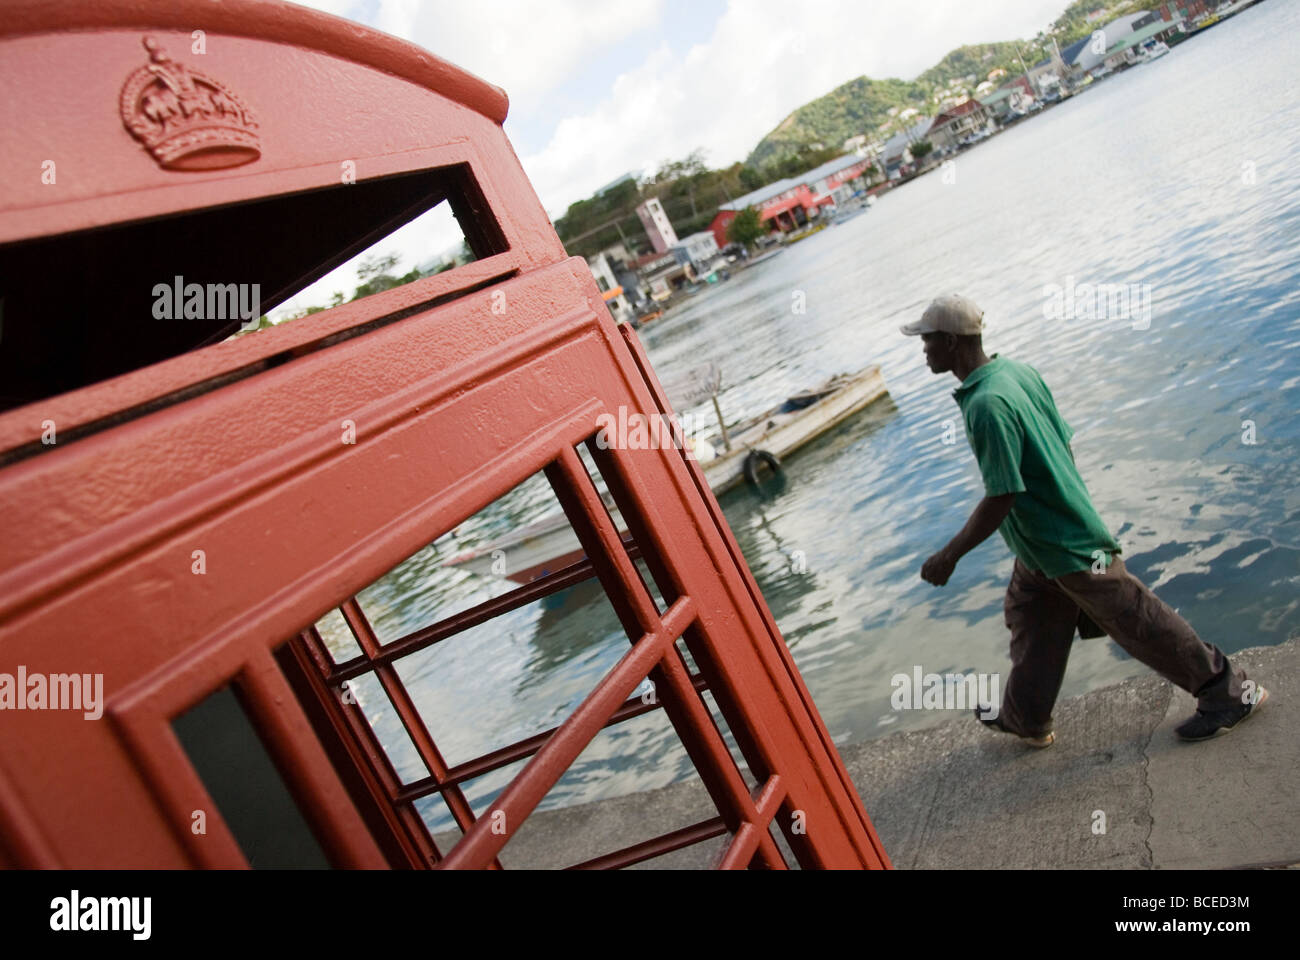 Un homme local passe devant un téléphone colonial abandonné à St George, Grenade (Caraïbes) avec une vue imprenable sur le port et les bateaux de pêche. Banque D'Images